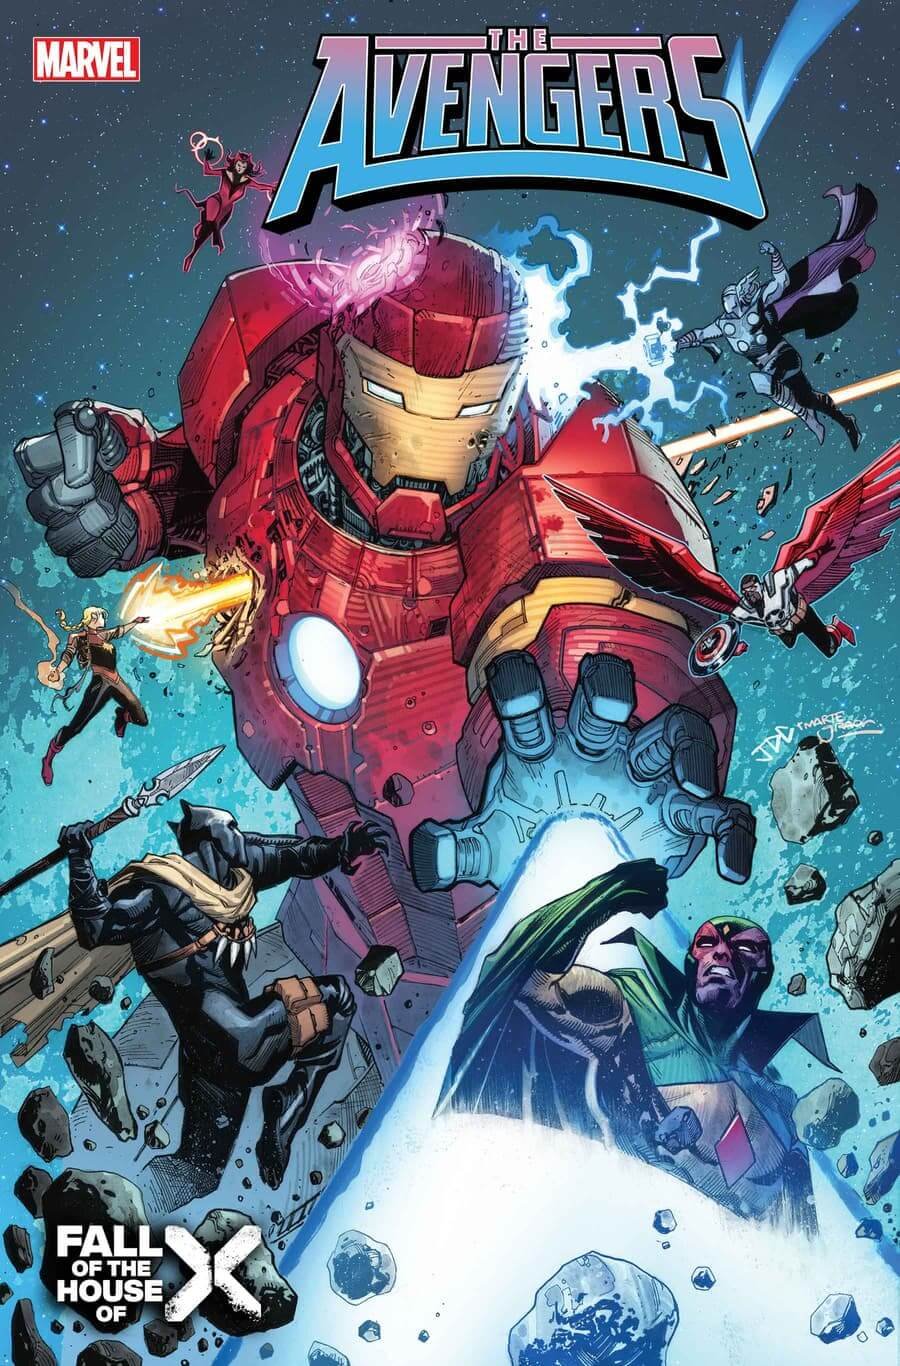 Cover di Avengers 13 di Joshua Cassara, crossover con le vicende degli X-Men